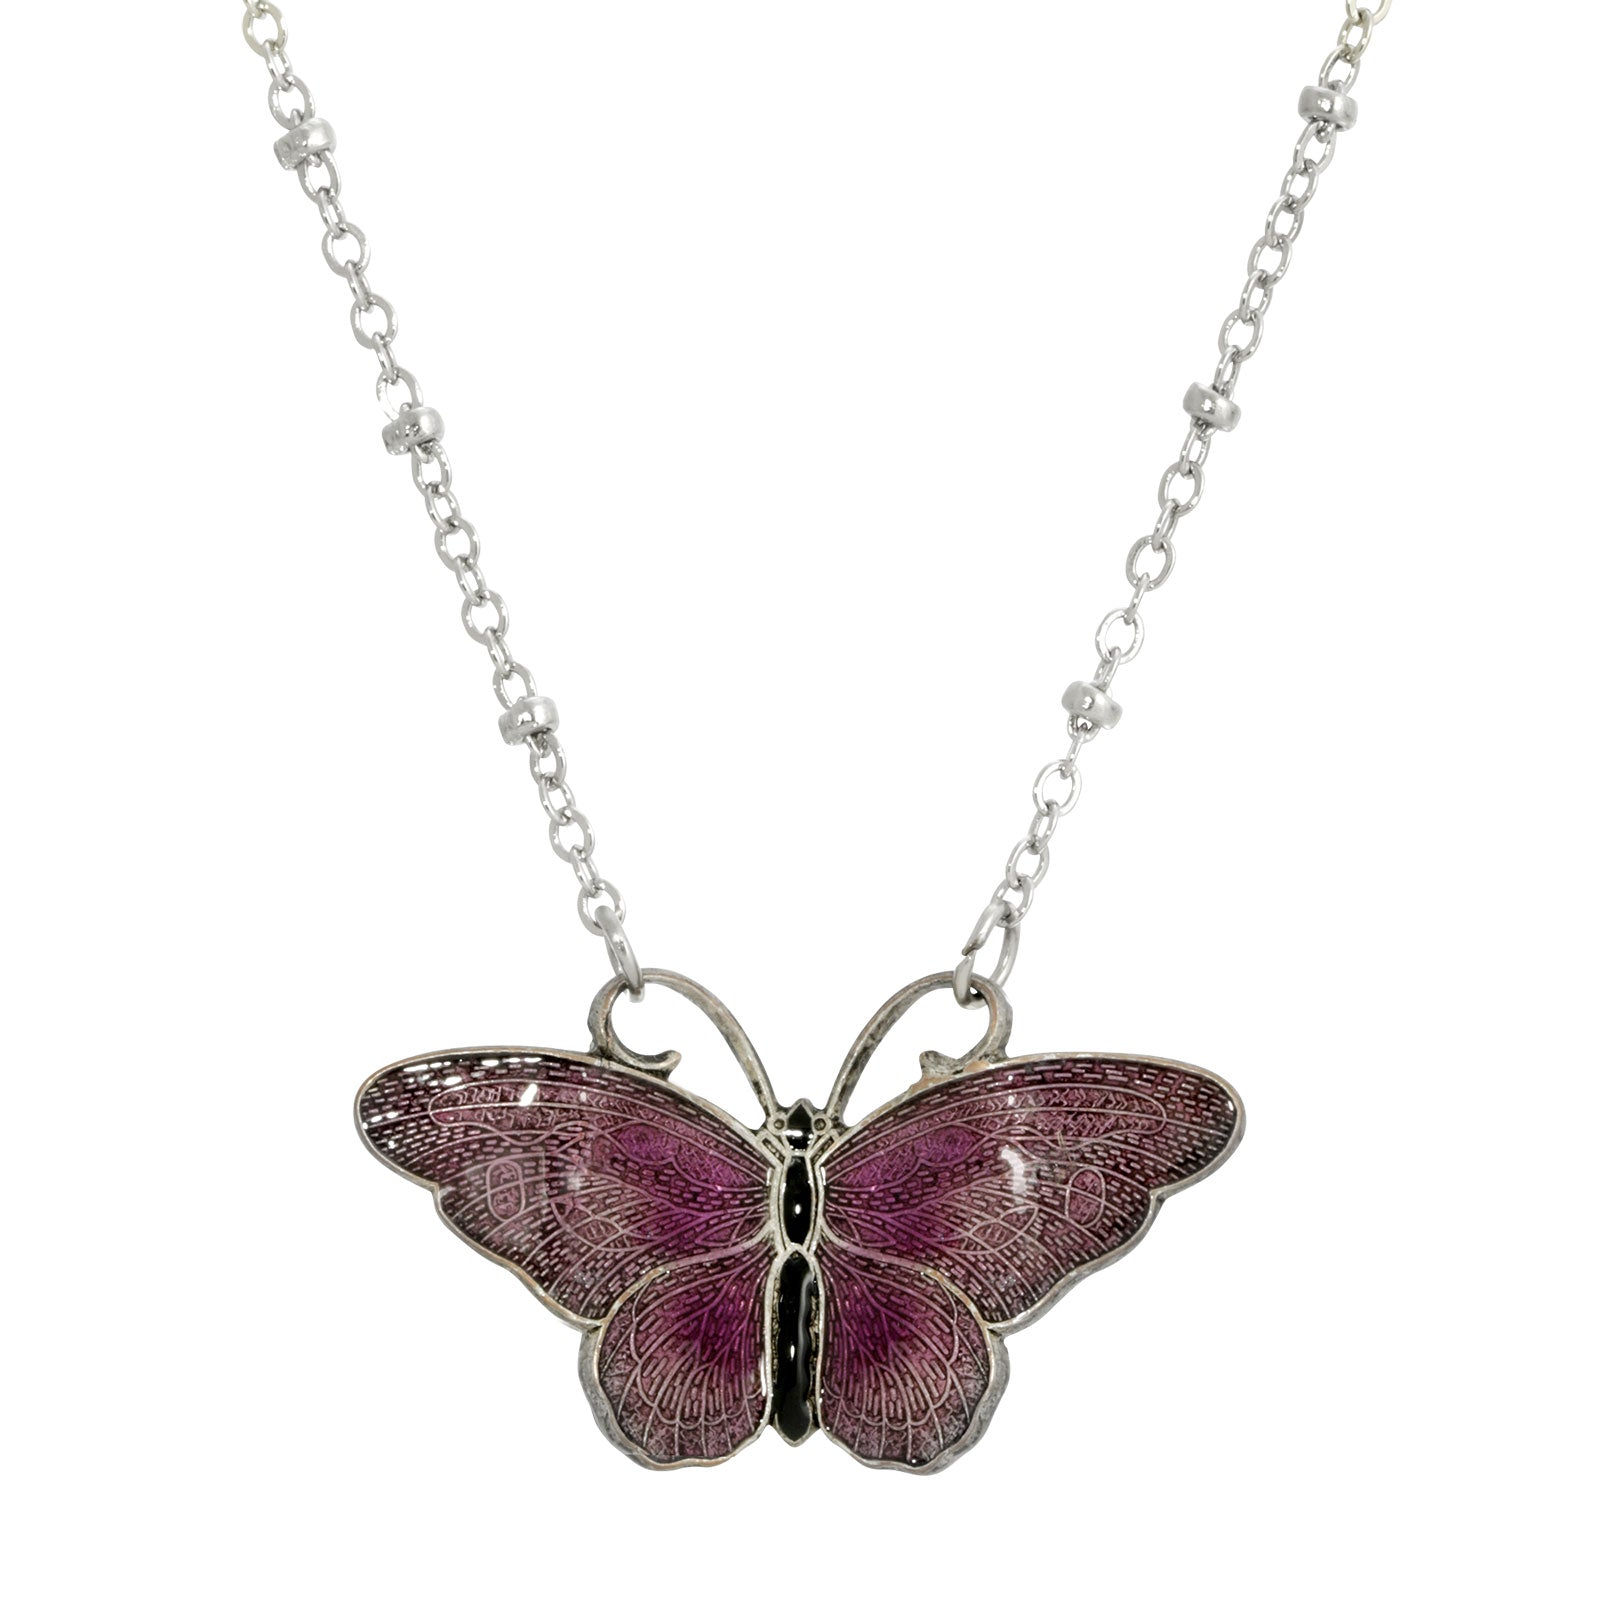 Silver-tone Purple And Black Enamel Butterfly Necklace 16”Adj.